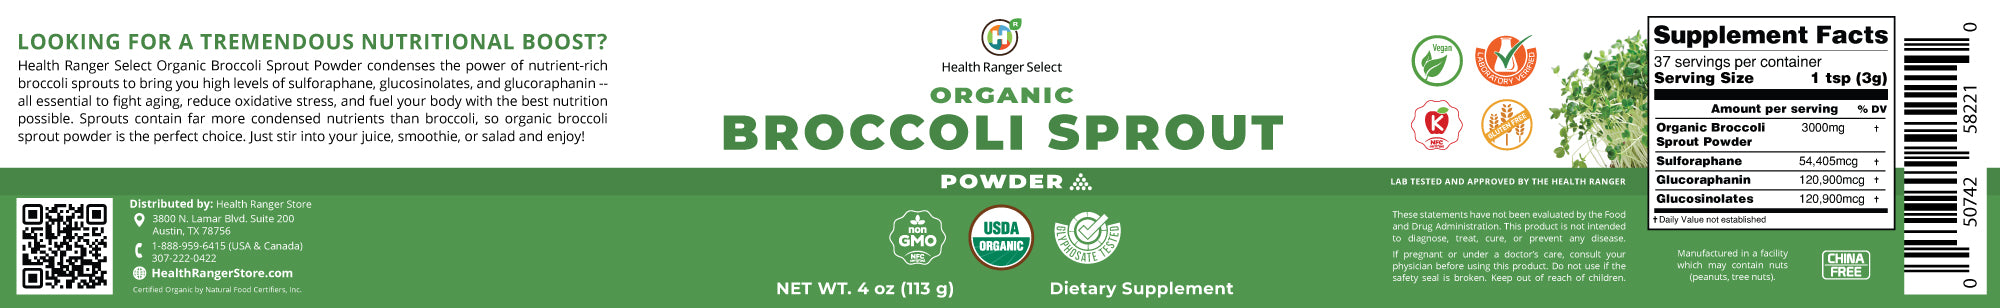 Organic Broccoli Sprout Powder 4oz (113g)